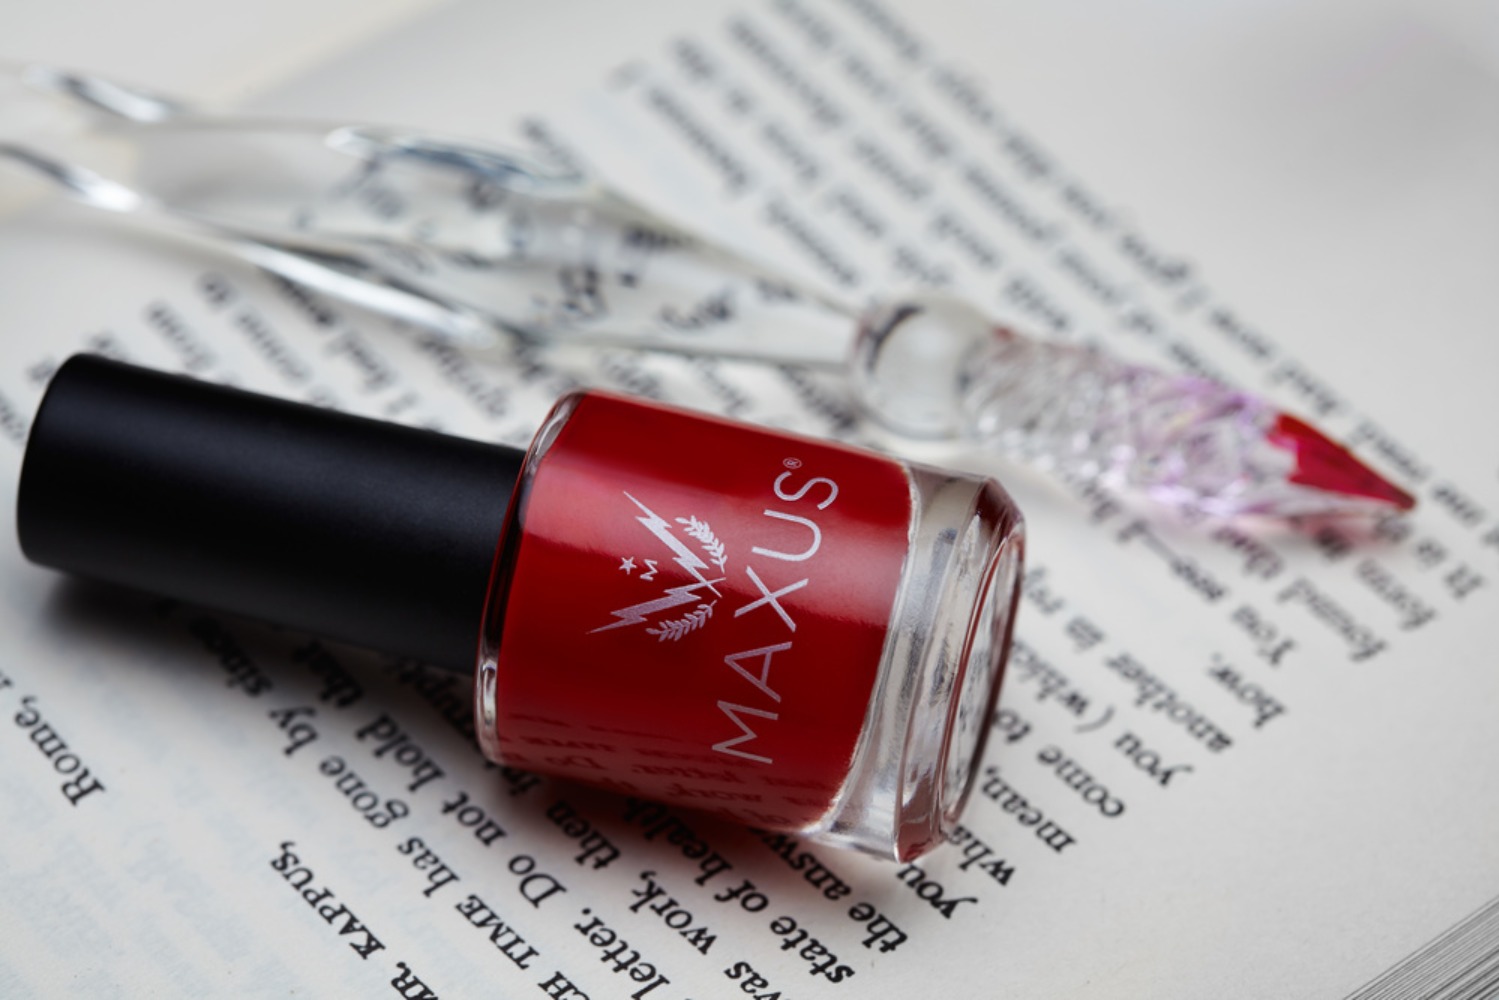 Red Nail Polish from Maxus